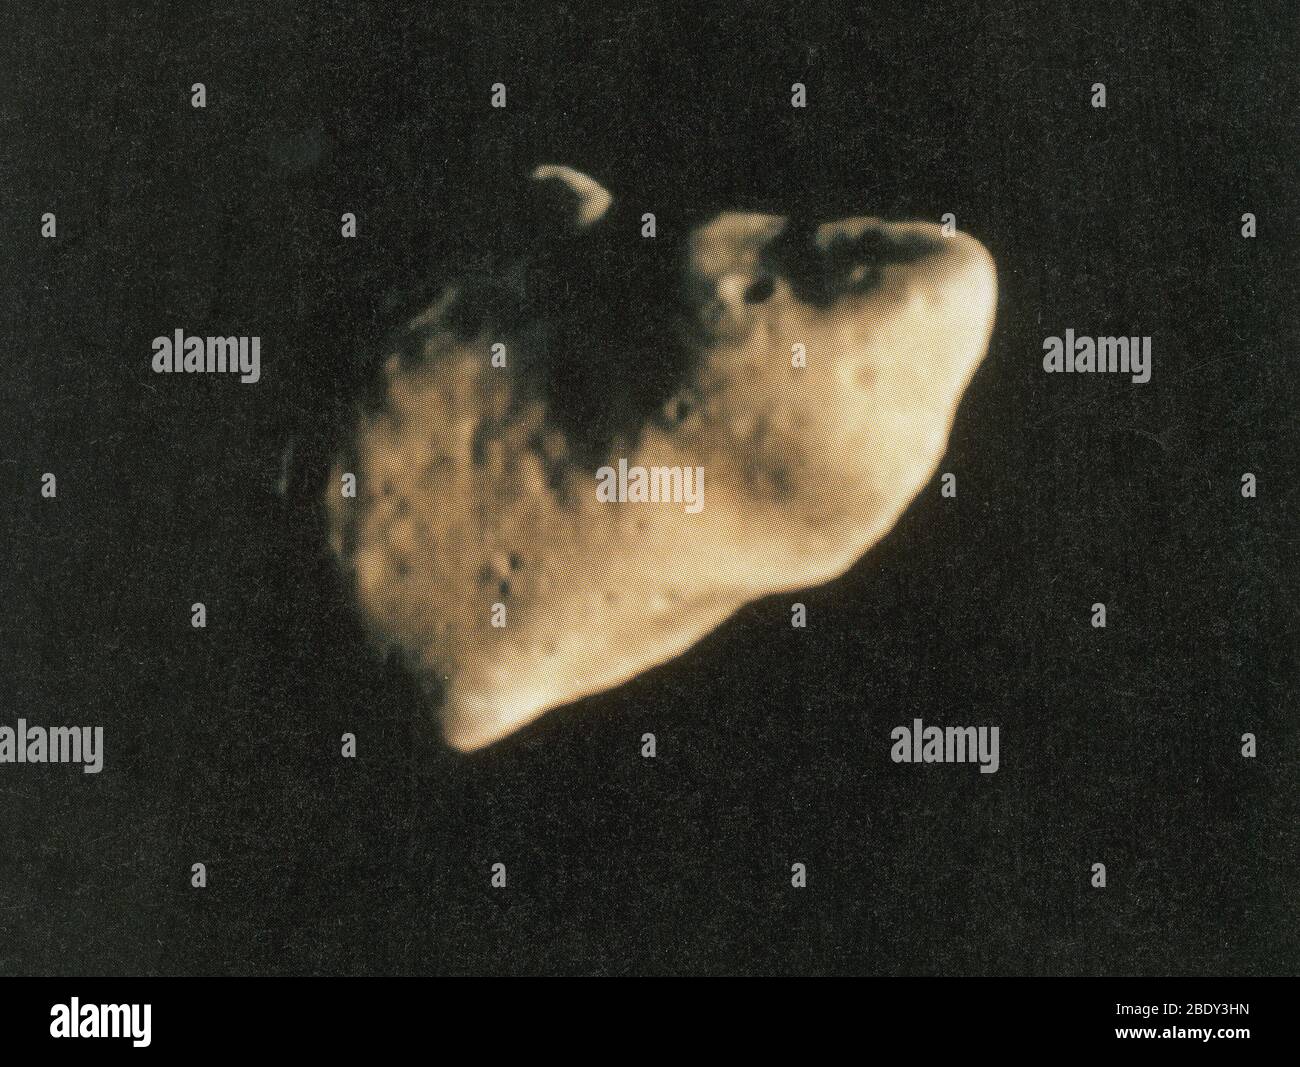 Gaspra, S-Type Asteroid, 1991 Stock Photo